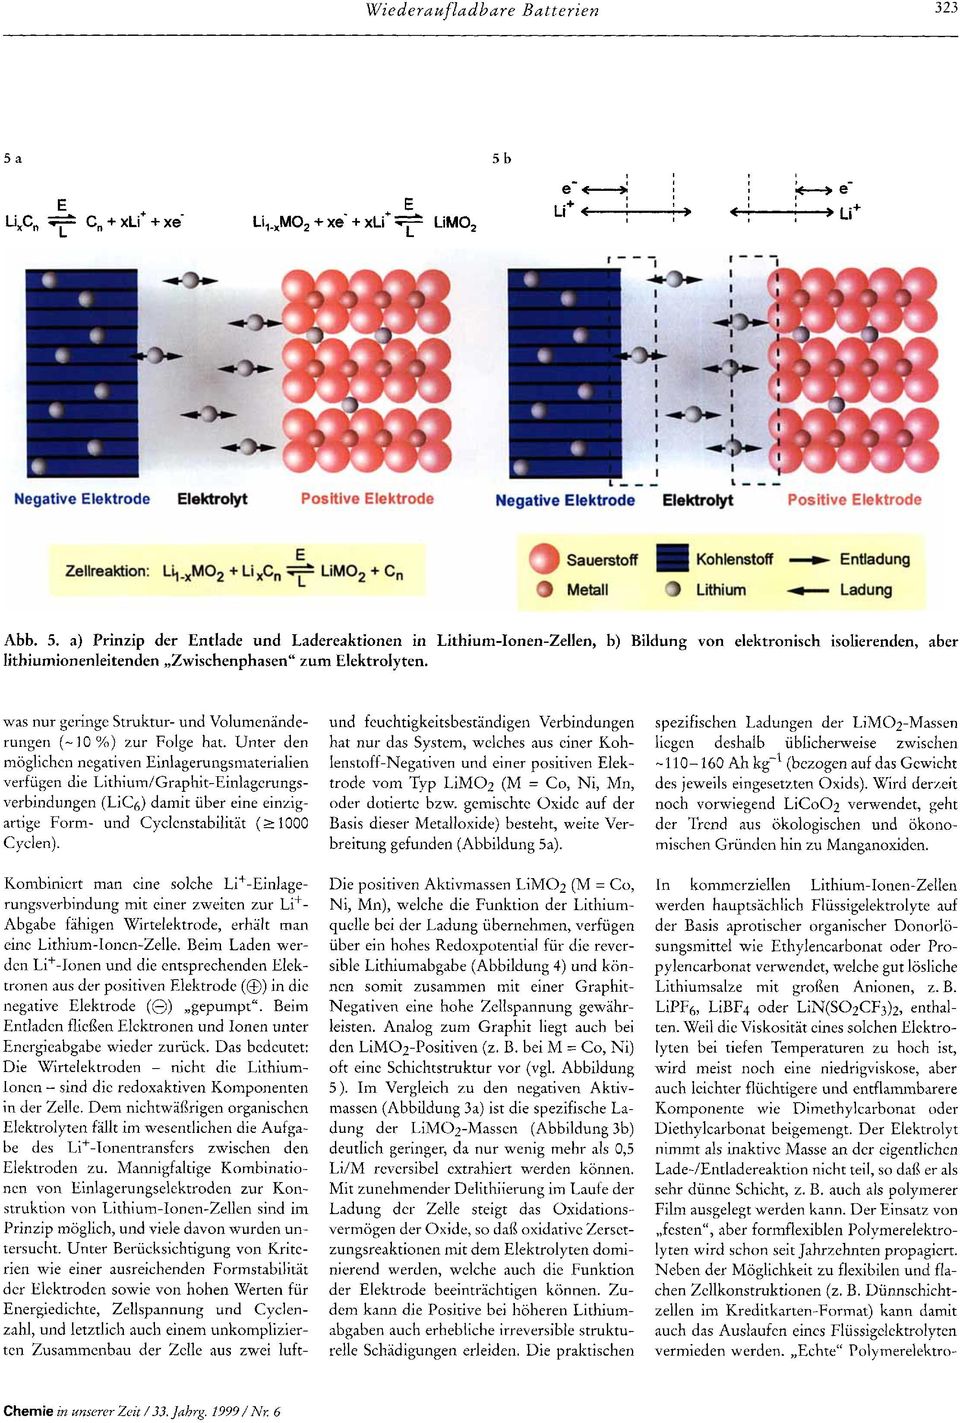 a) Prinzip der Entlade und Ladereaktionen in Lithium-Ionen-Zellen, b) Bildung von elektronisch isolierenden, aber lithiumionenleitenden,,zwischenphasen" zum Elektrolyten.